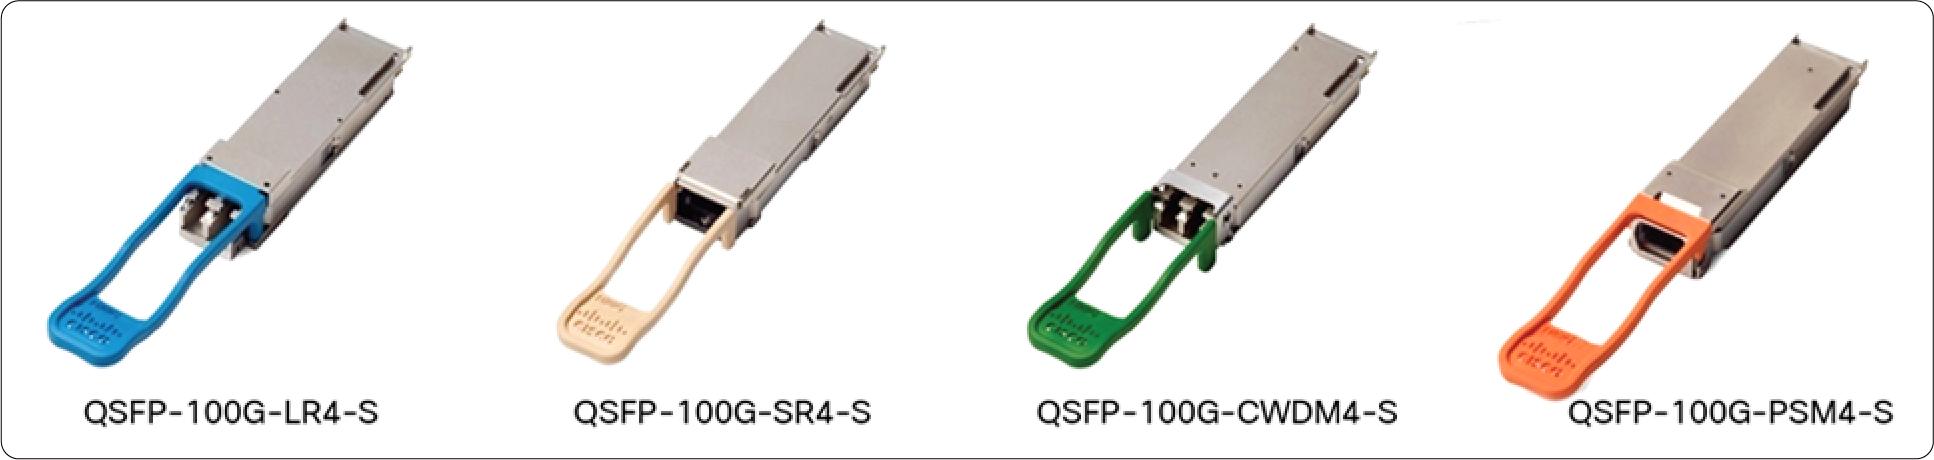 QSFP-100G-AOC7M Cisco 100 Gigabit Modules - Cisco 100GBASE QSFP Modules - 2